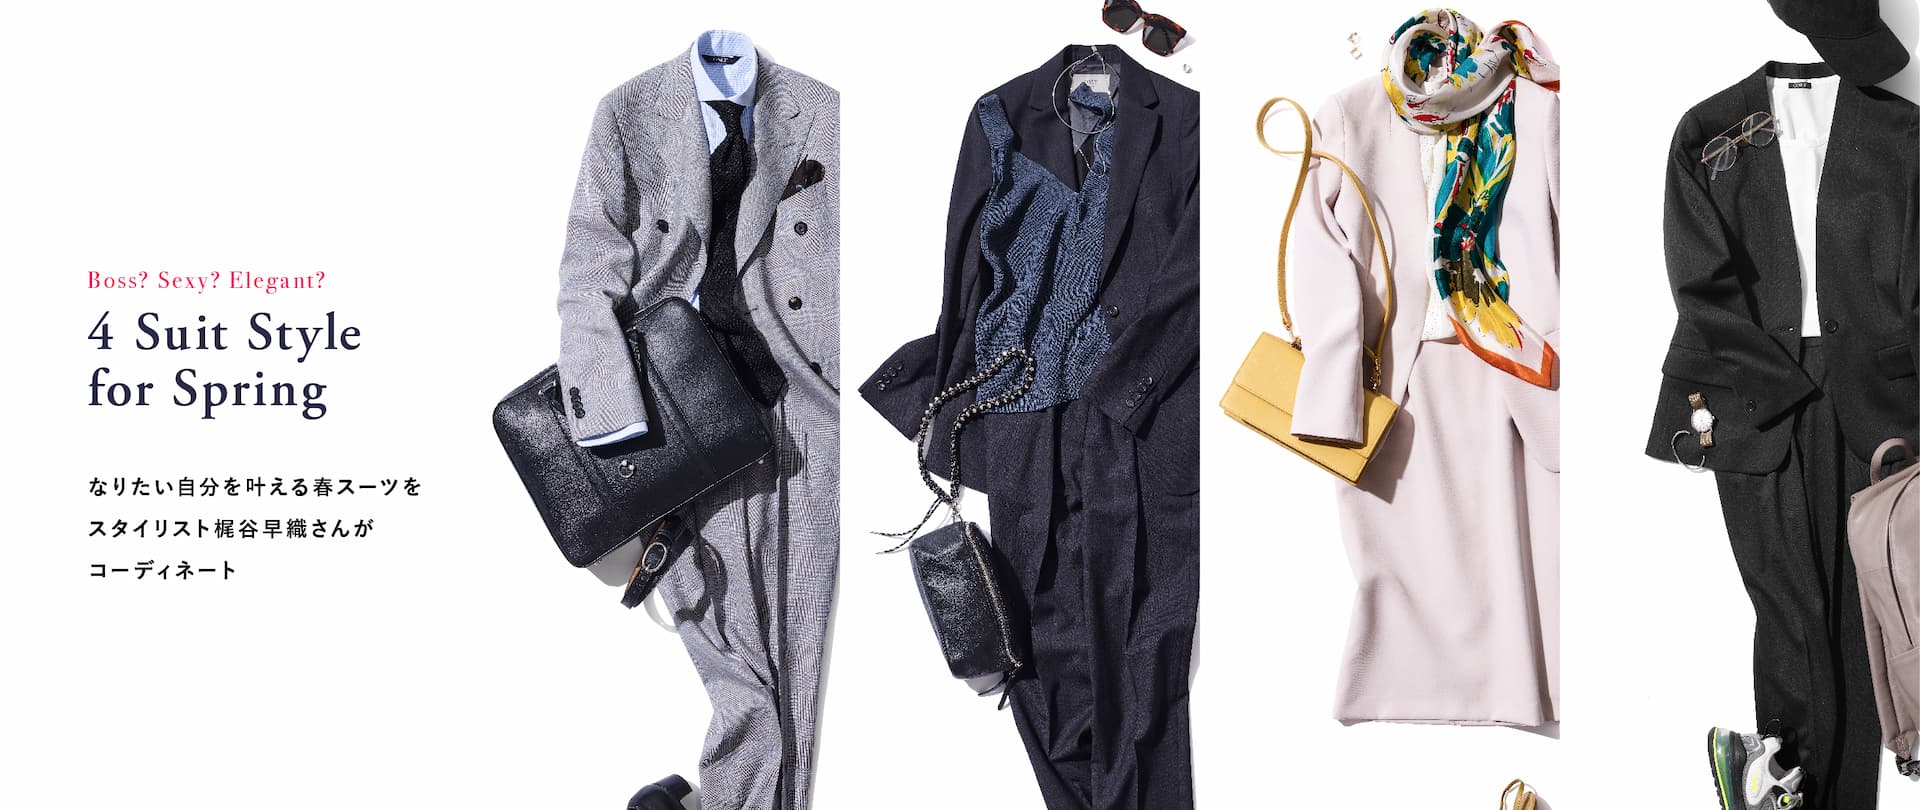 4 Suit Style for Spring なりたい自分を叶える春スーツをスタイリスト梶谷早織さんがコーディネート